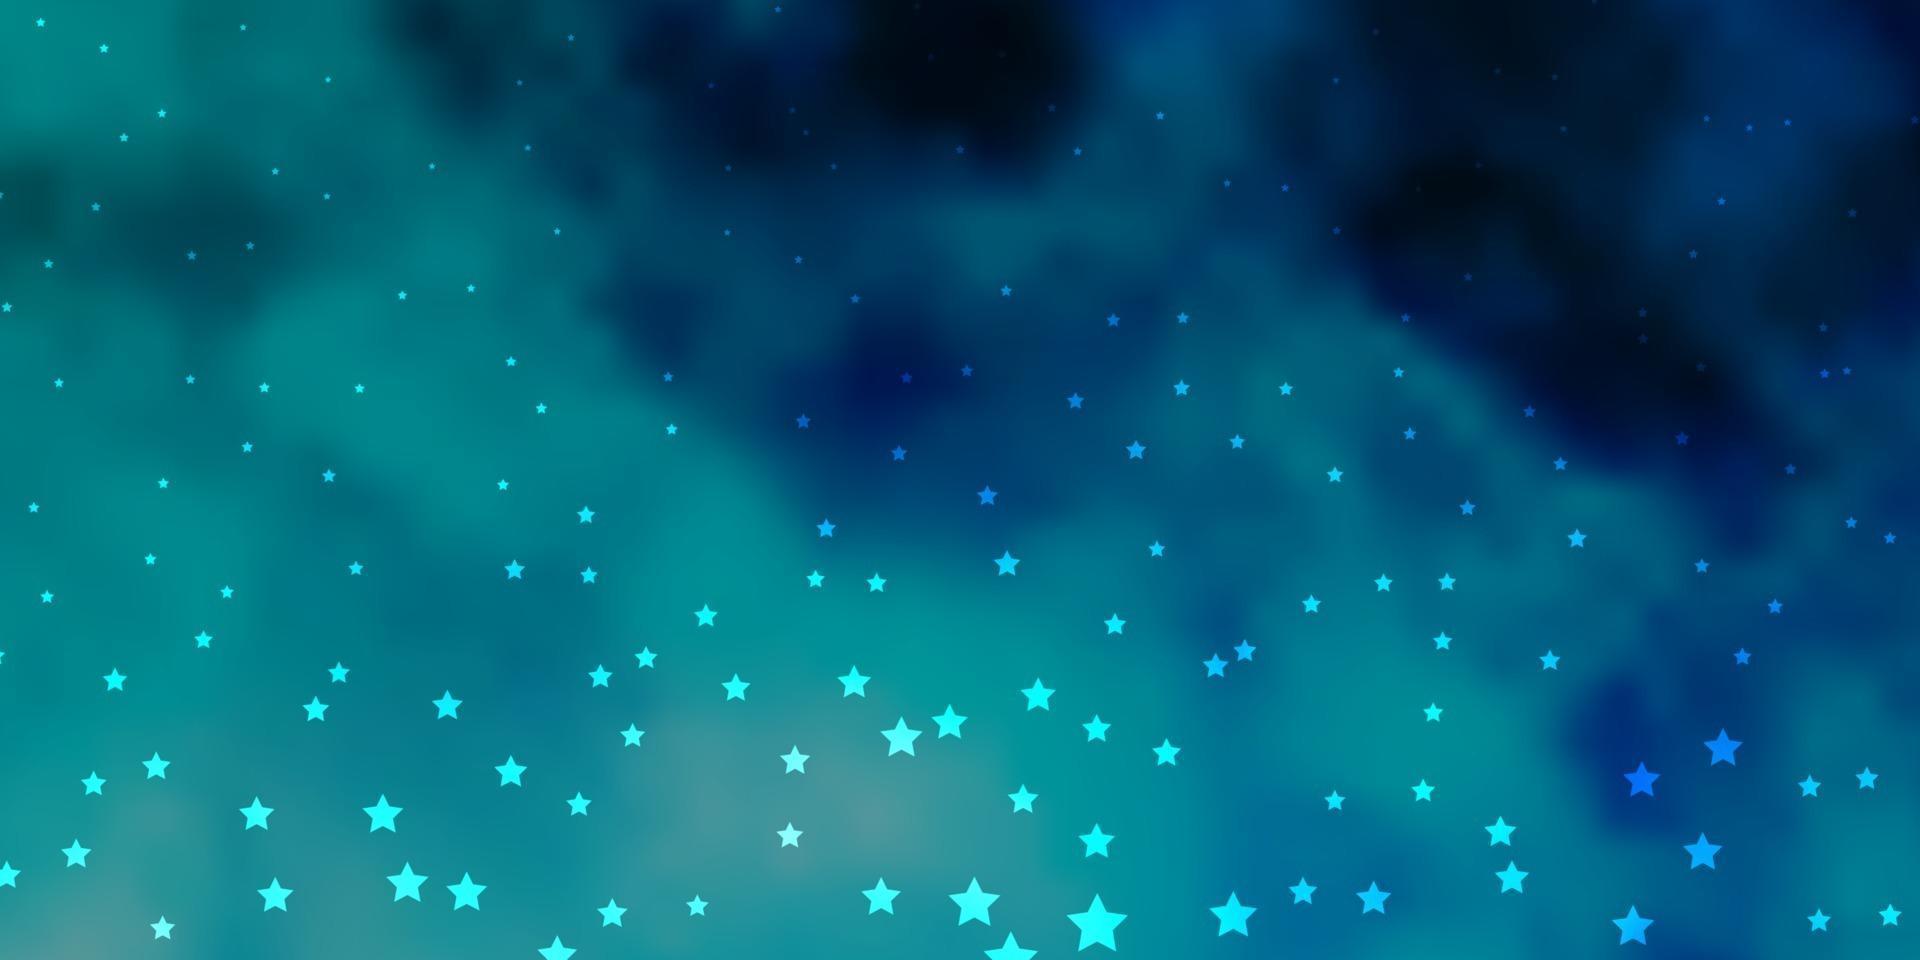 plantilla de vector azul oscuro con estrellas de neón.